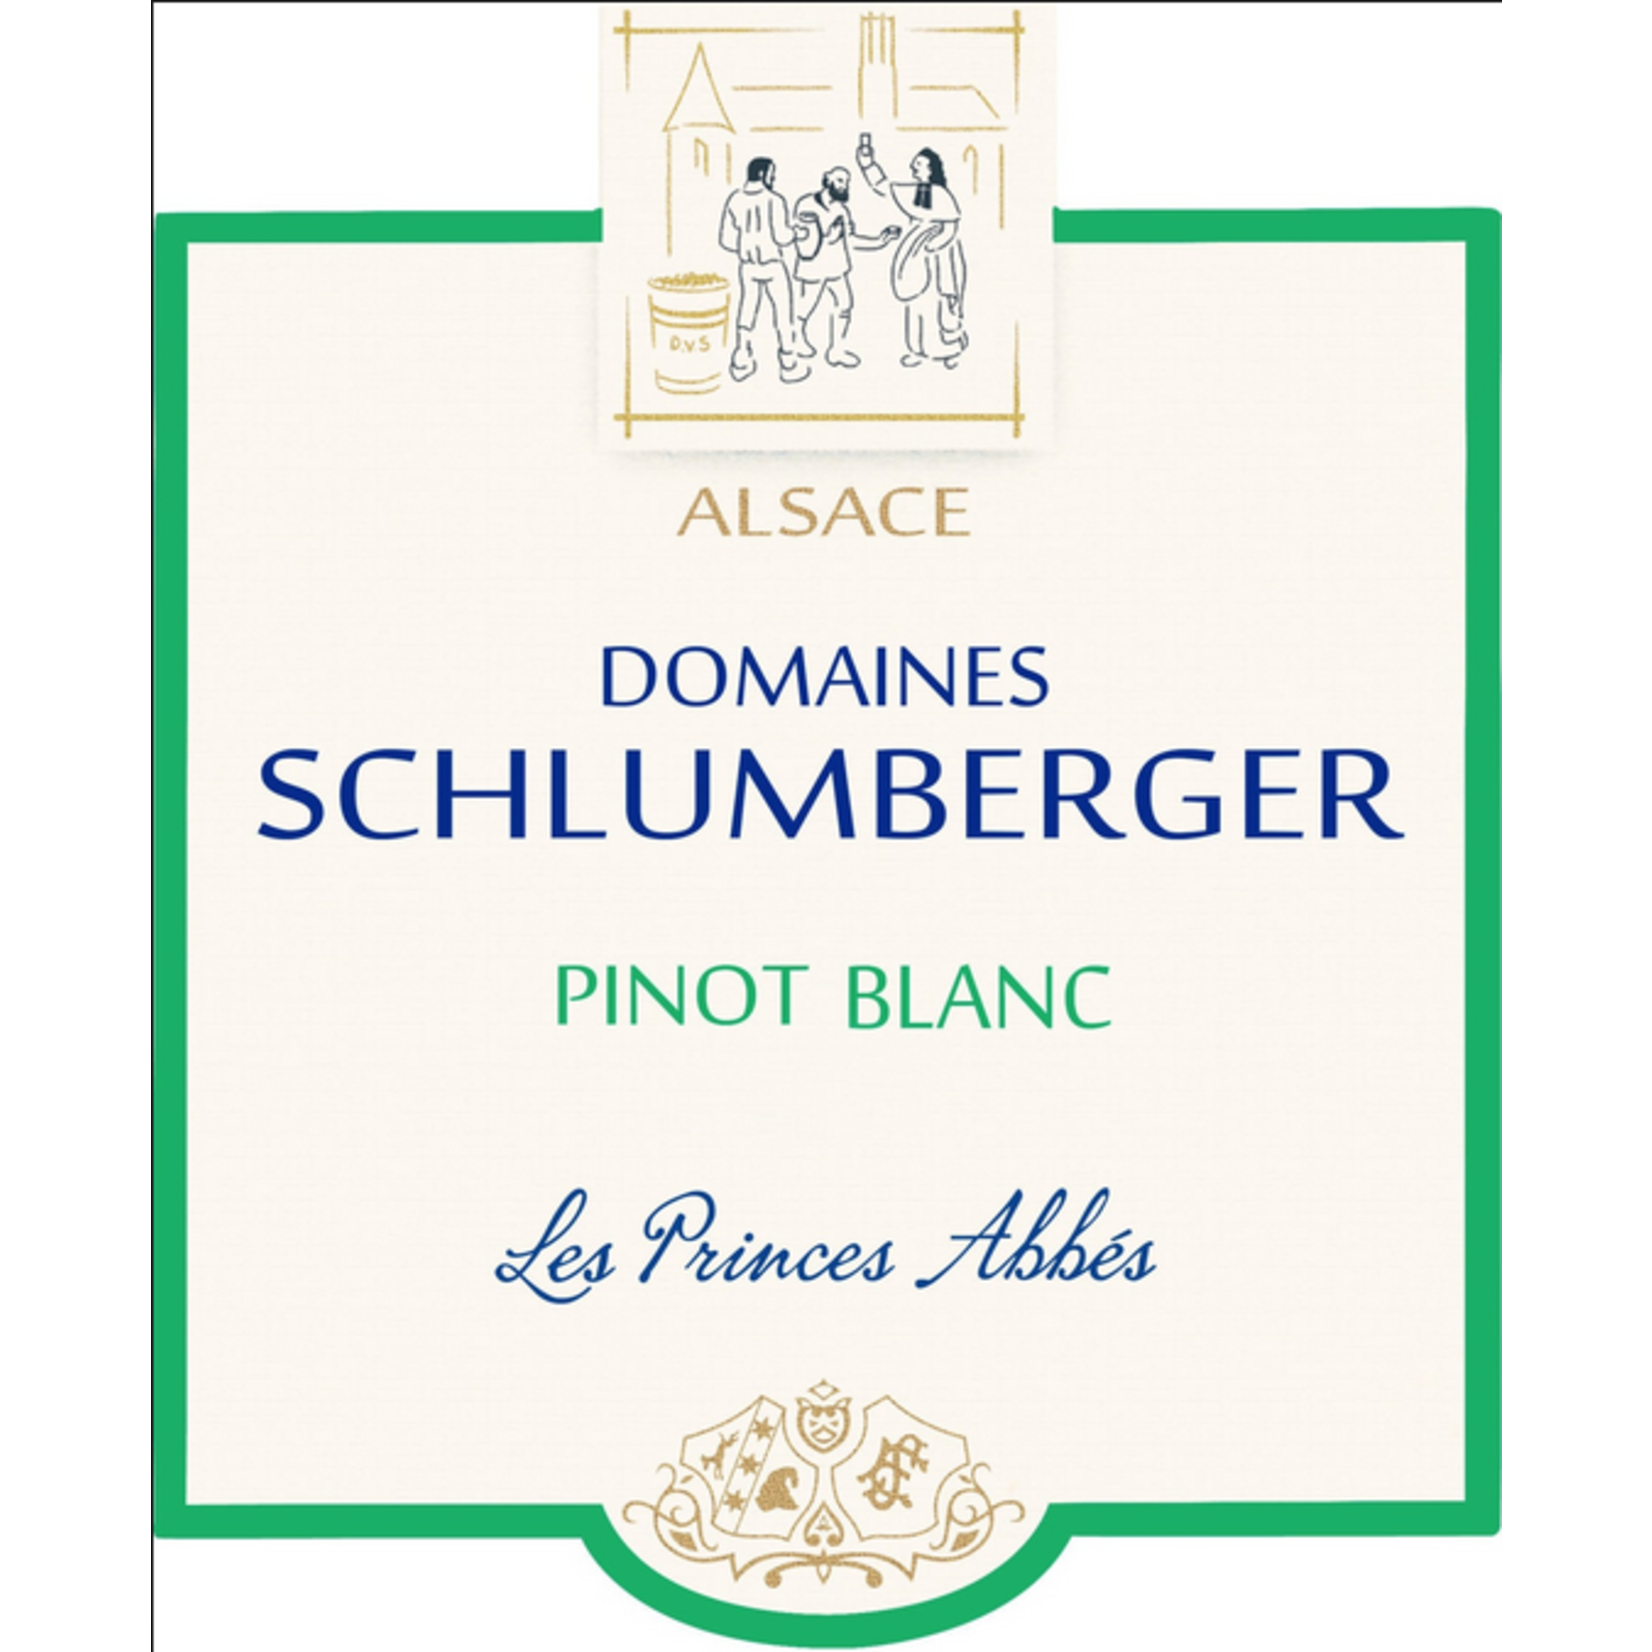 Domaines Schlumberger Domaines Schlumberger Pinot Blanc Les Princes Abbés 2020  France